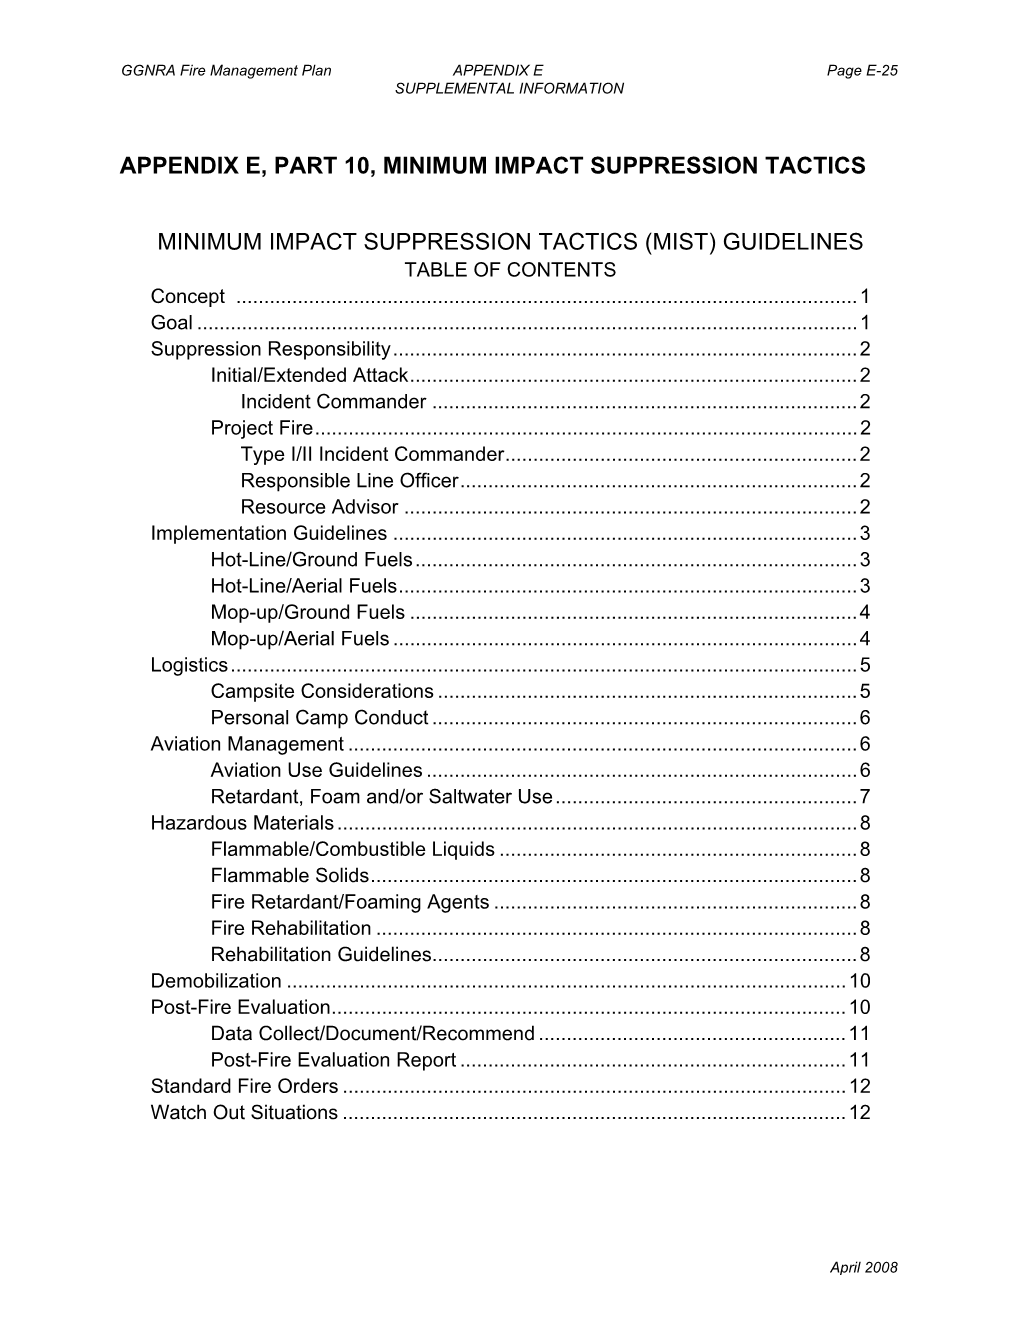 Appendix E, Part 10, Minimum Impact Suppression Tactics